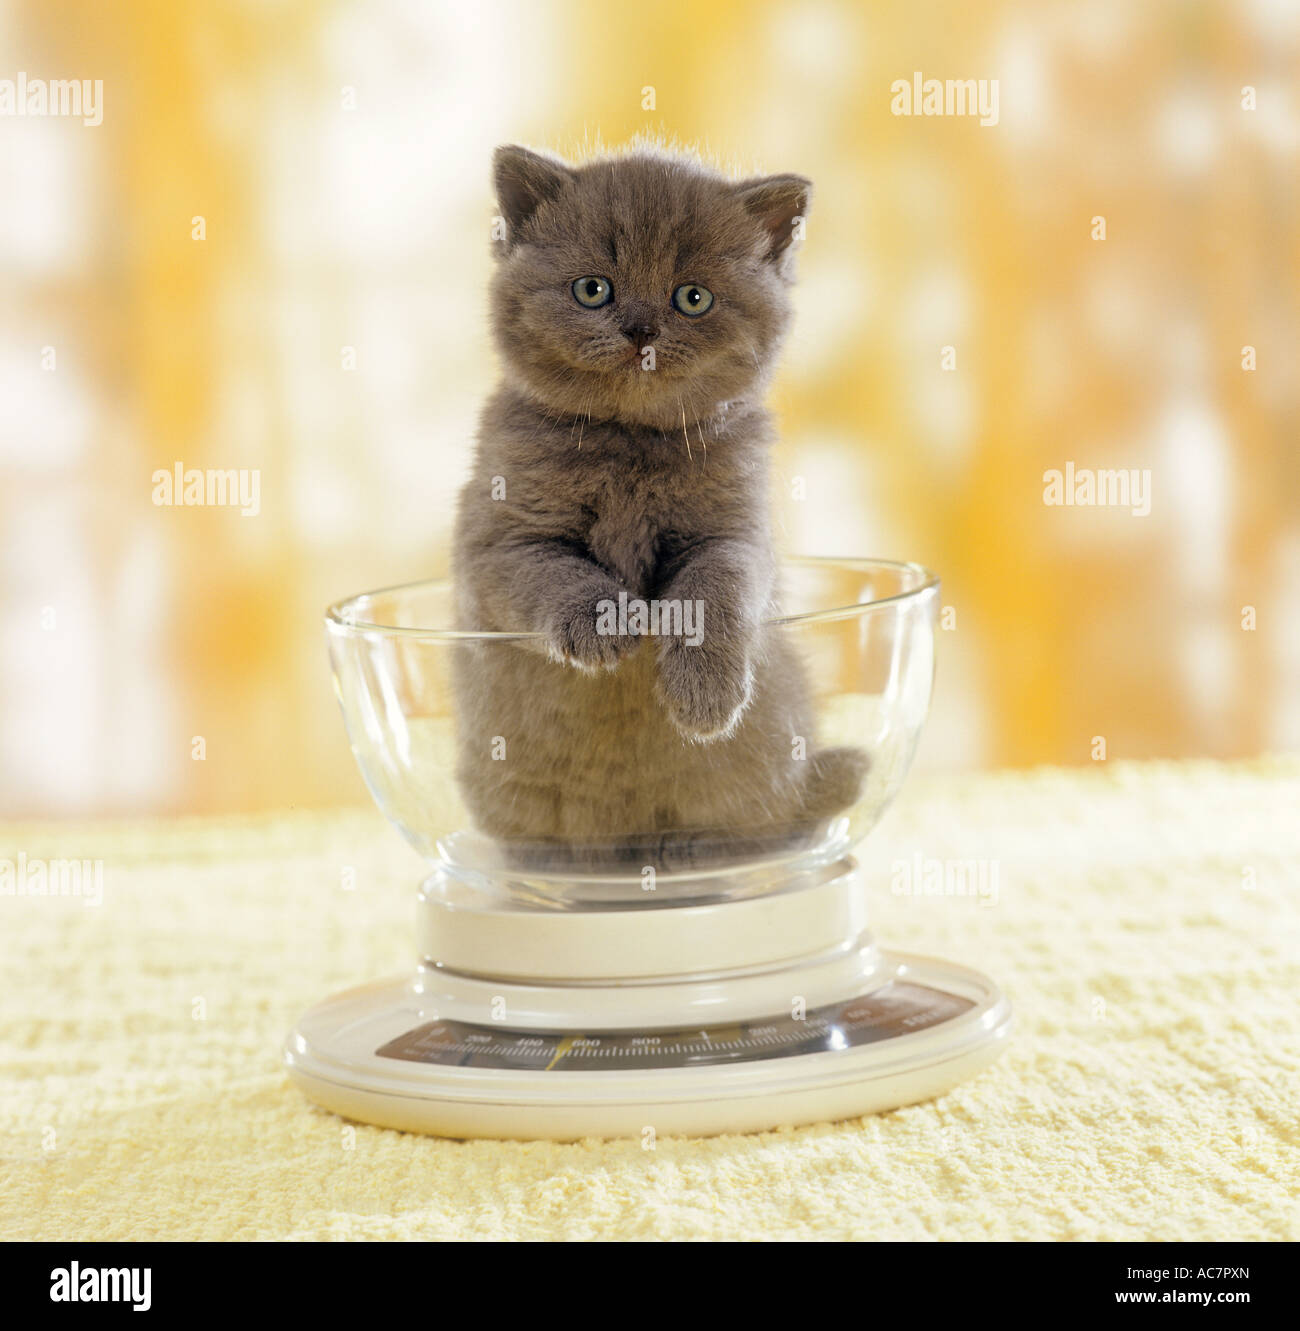 Carthusian kitten on scale Stock Photo